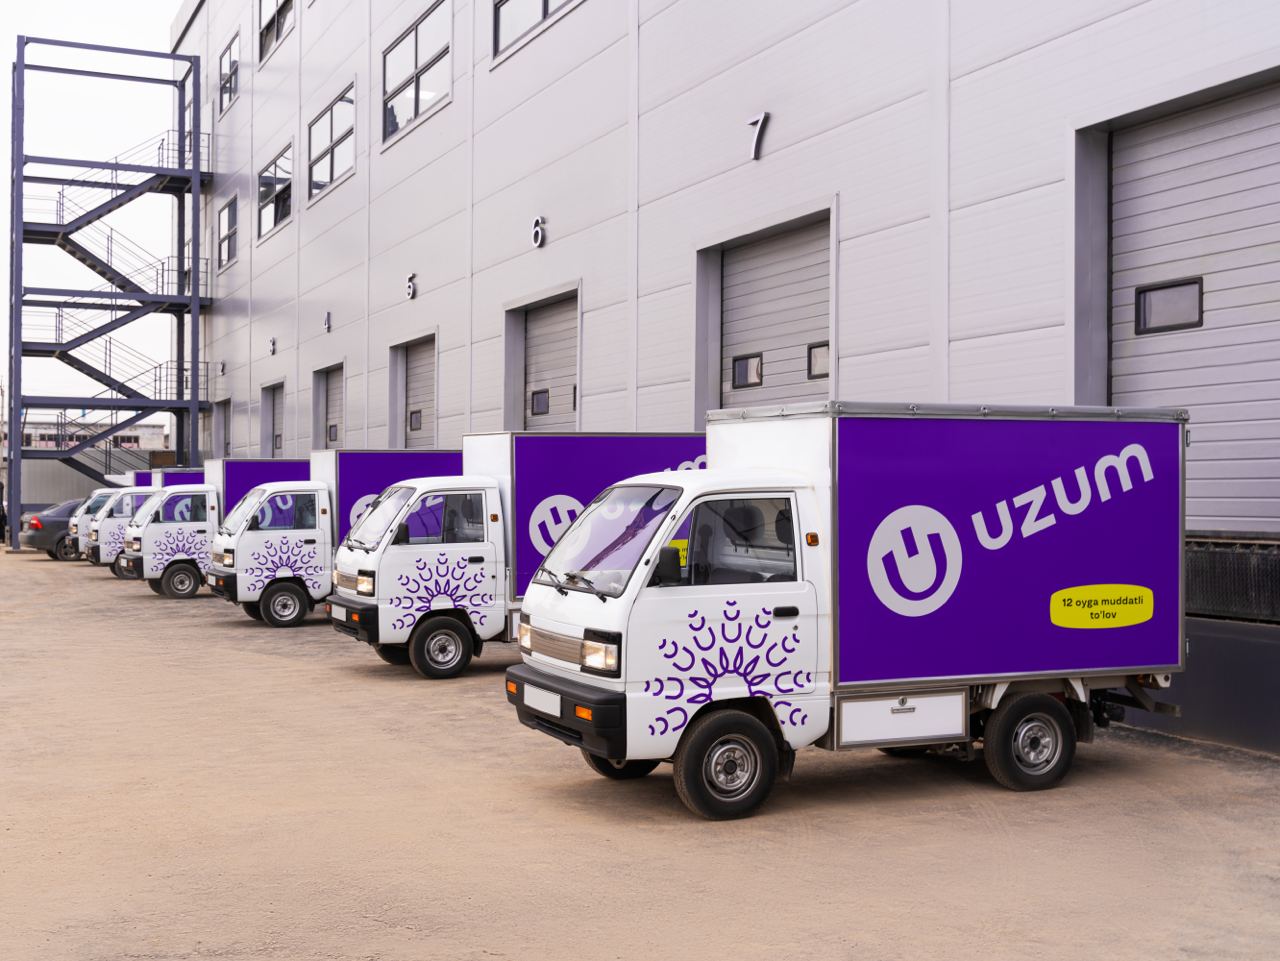 Холдинг Uzum планирует привлечение иностранных инвестиций в экономику страны